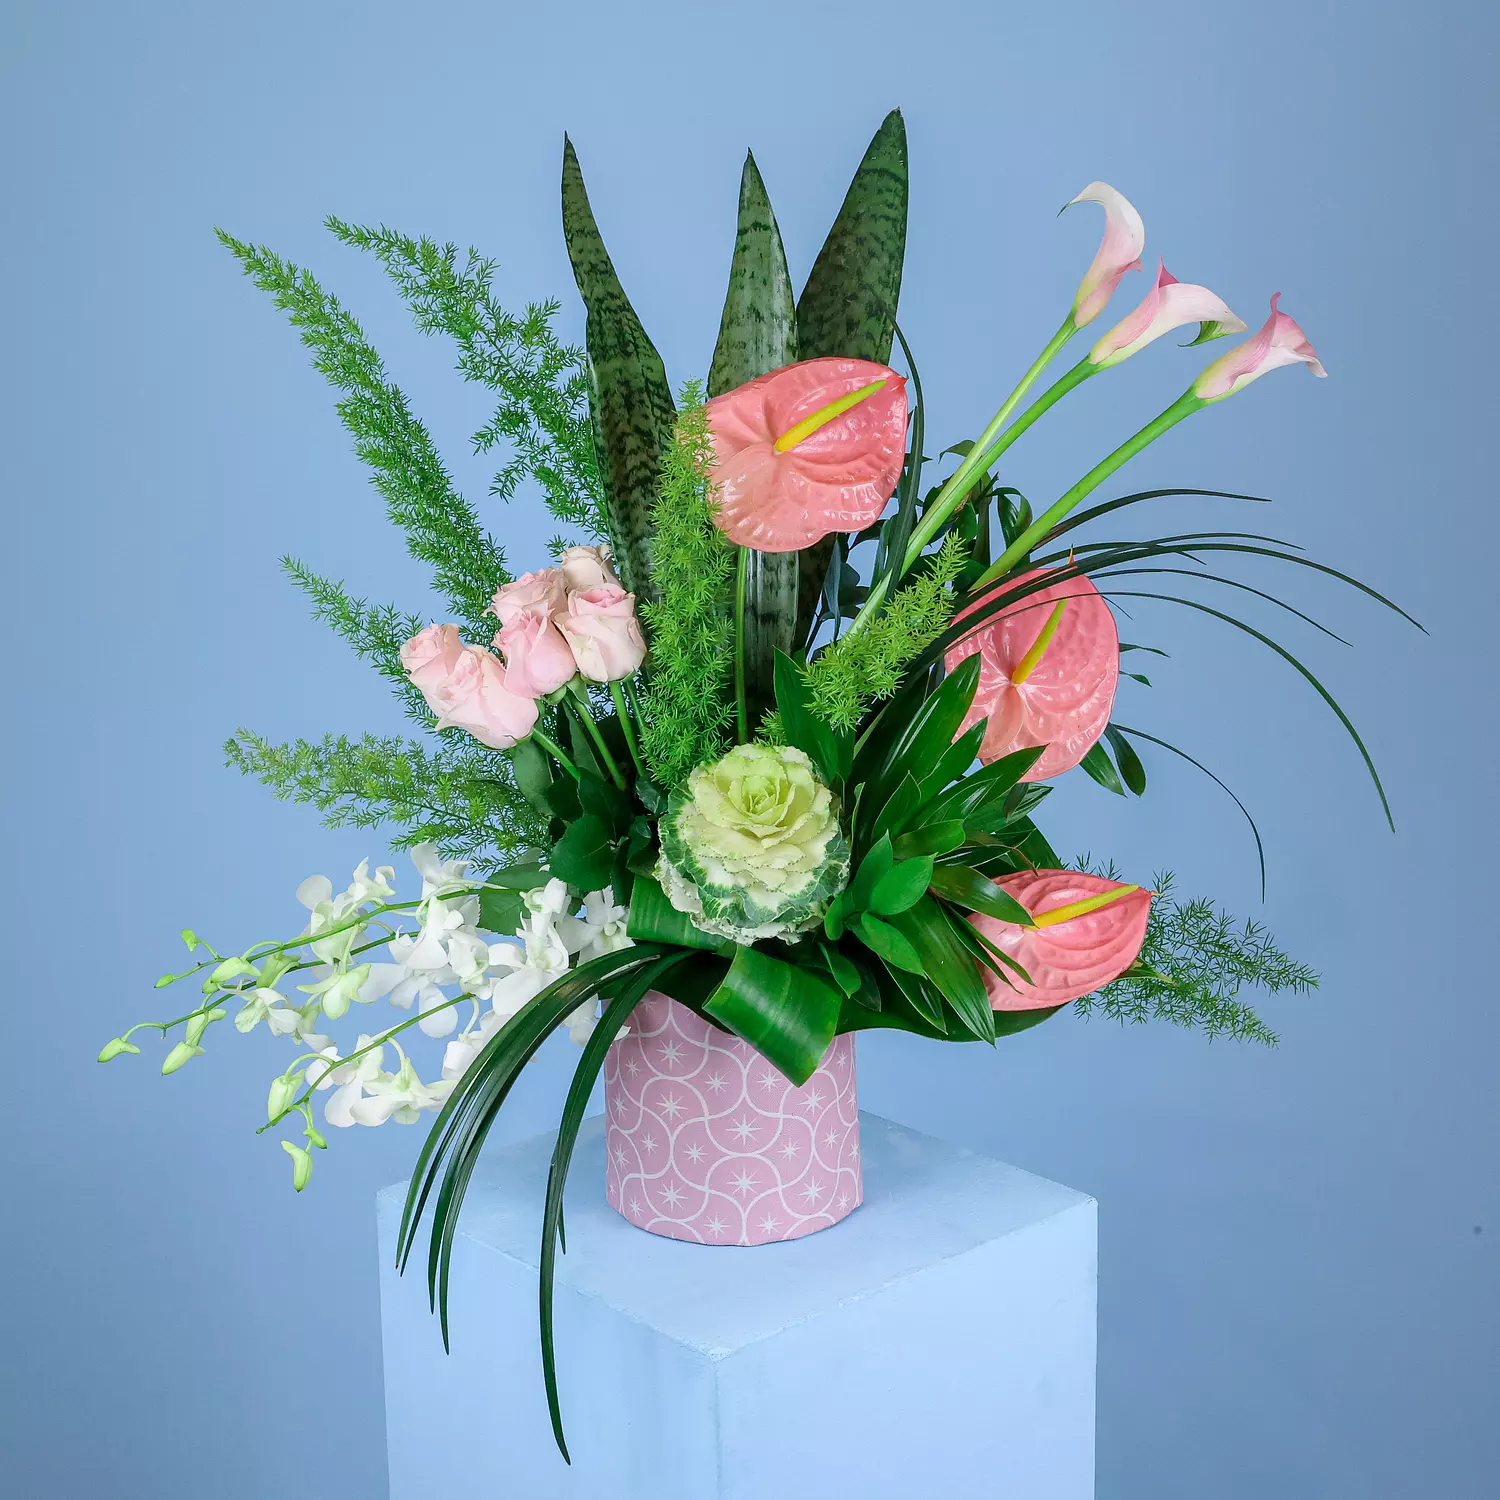 Guiding Star Flower Vase hover image